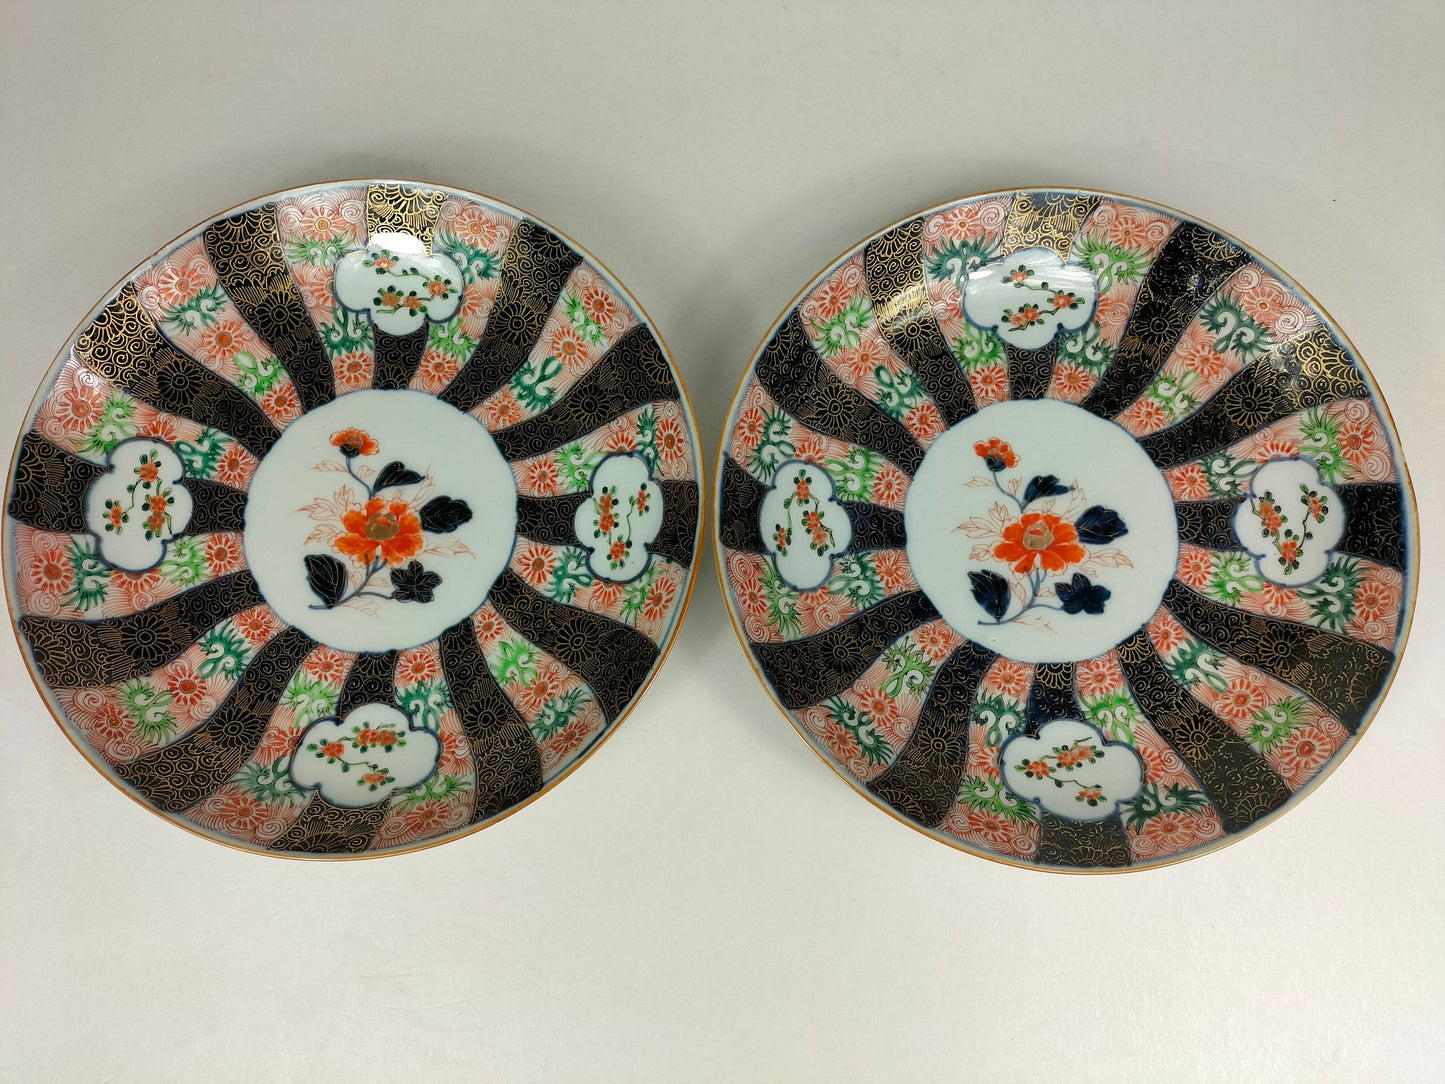 Pair of large antique Japanese imari plates // Meiji Period - 19th century